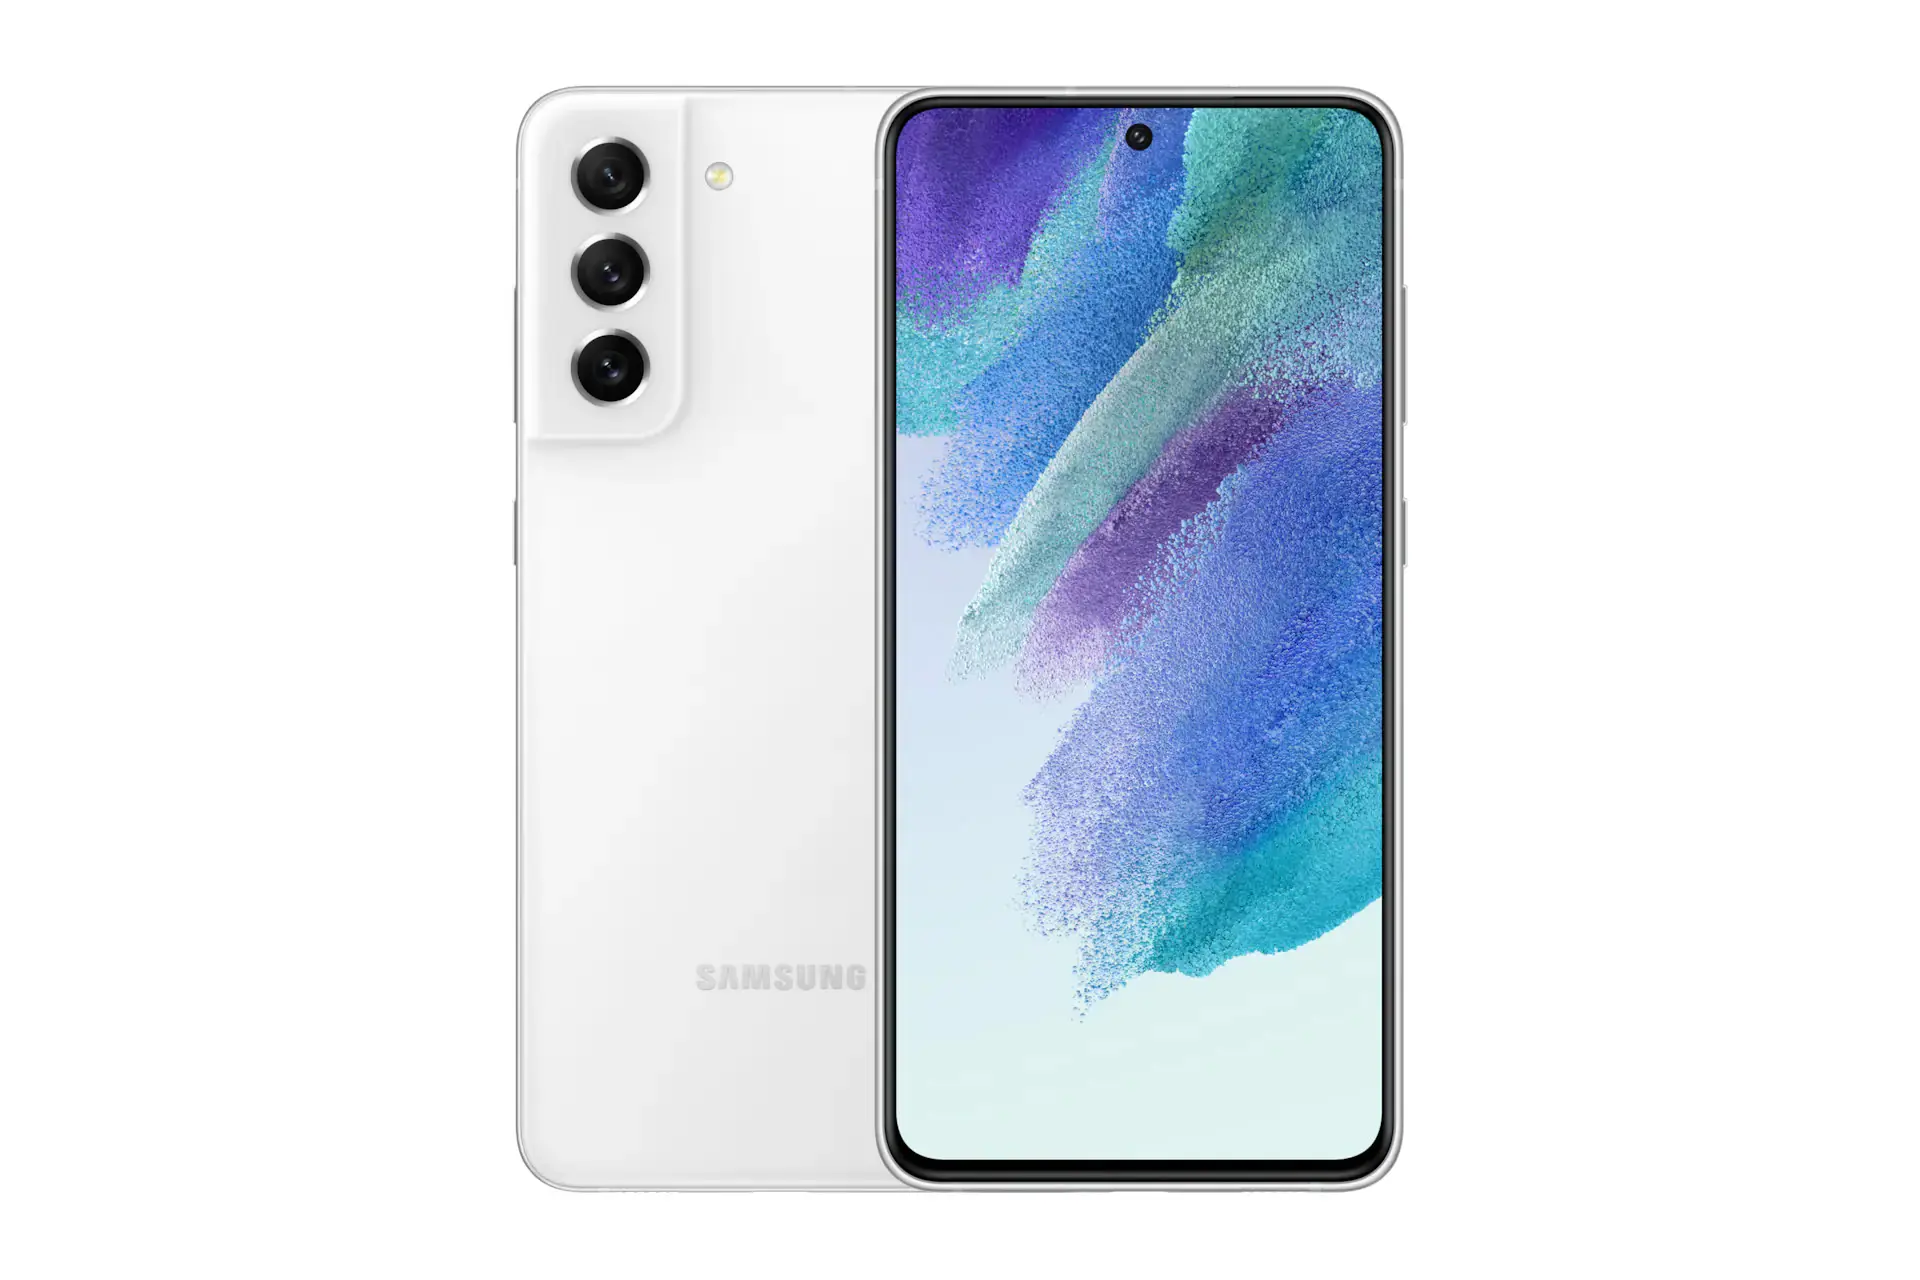 نمای کلی Samsung Galaxy S21 FE 5G / گوشی موبایل گلکسی اس 21 اف ای سامسونگ 5G با نمایشگر روشن و نمایش لوگو و دوربین پنل پشت رنگ سفید